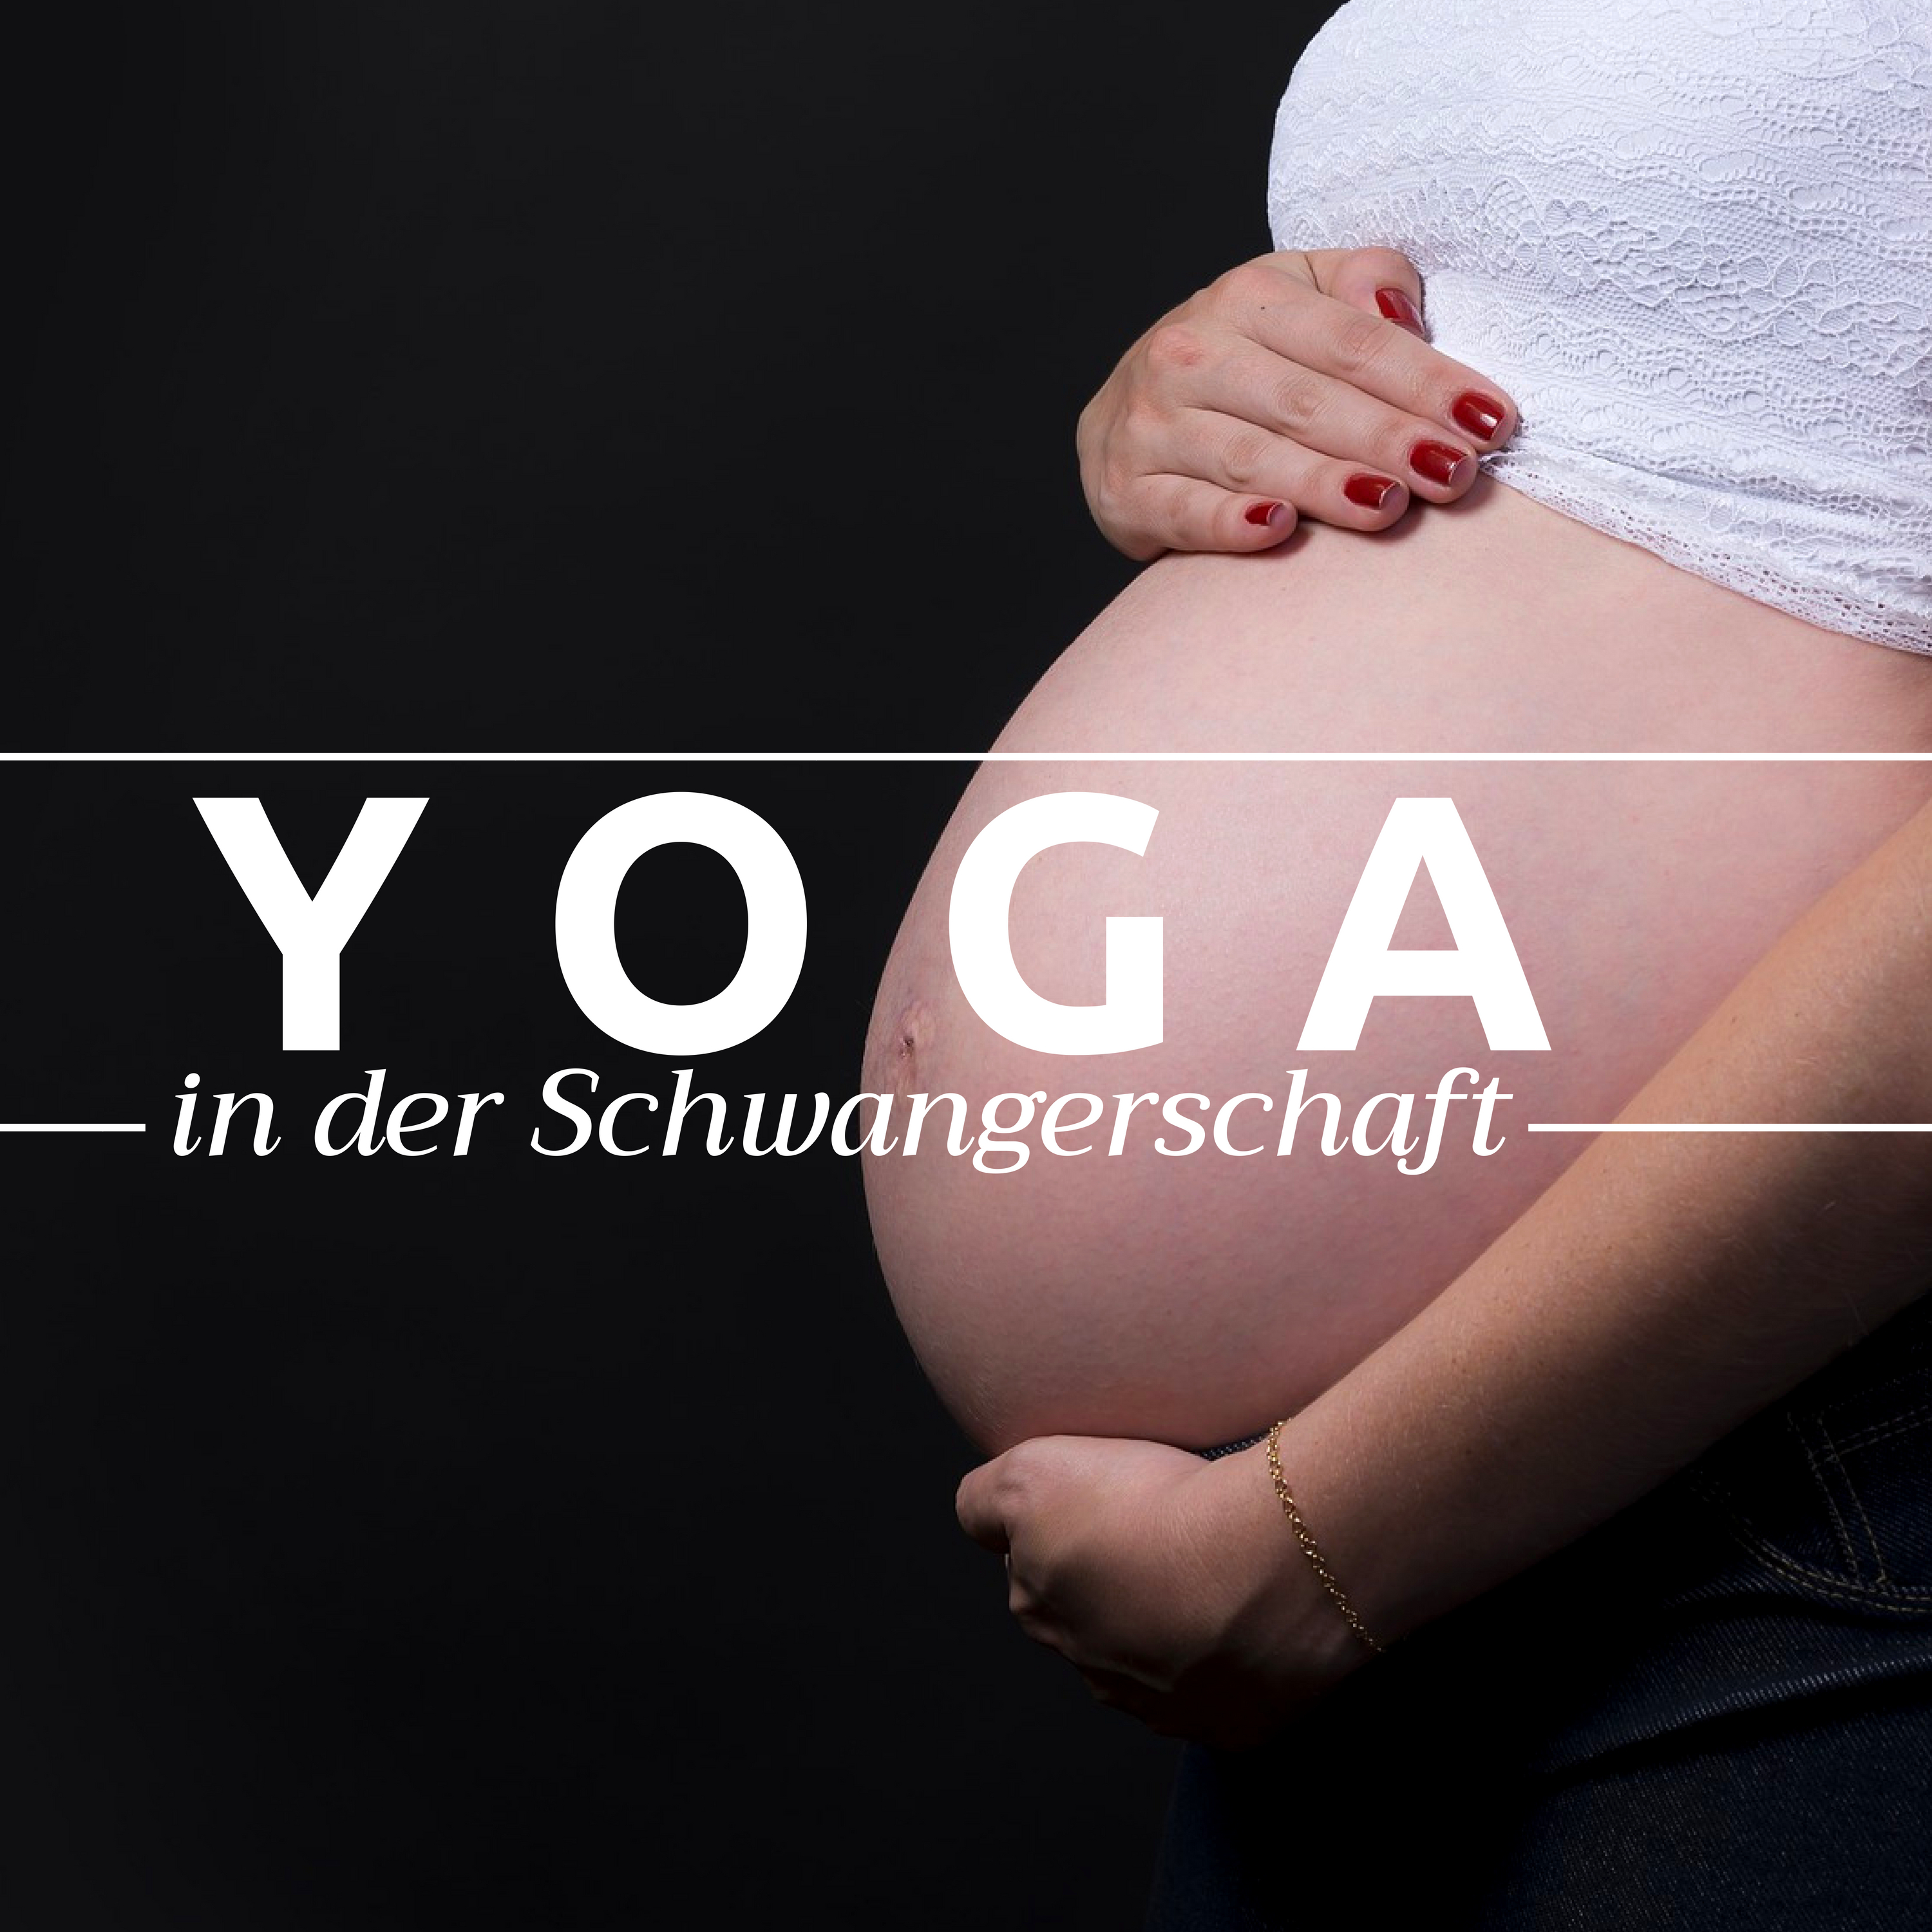 Yoga in der Schwangerschaft  Hintergrundmusik fü r die Arbeit